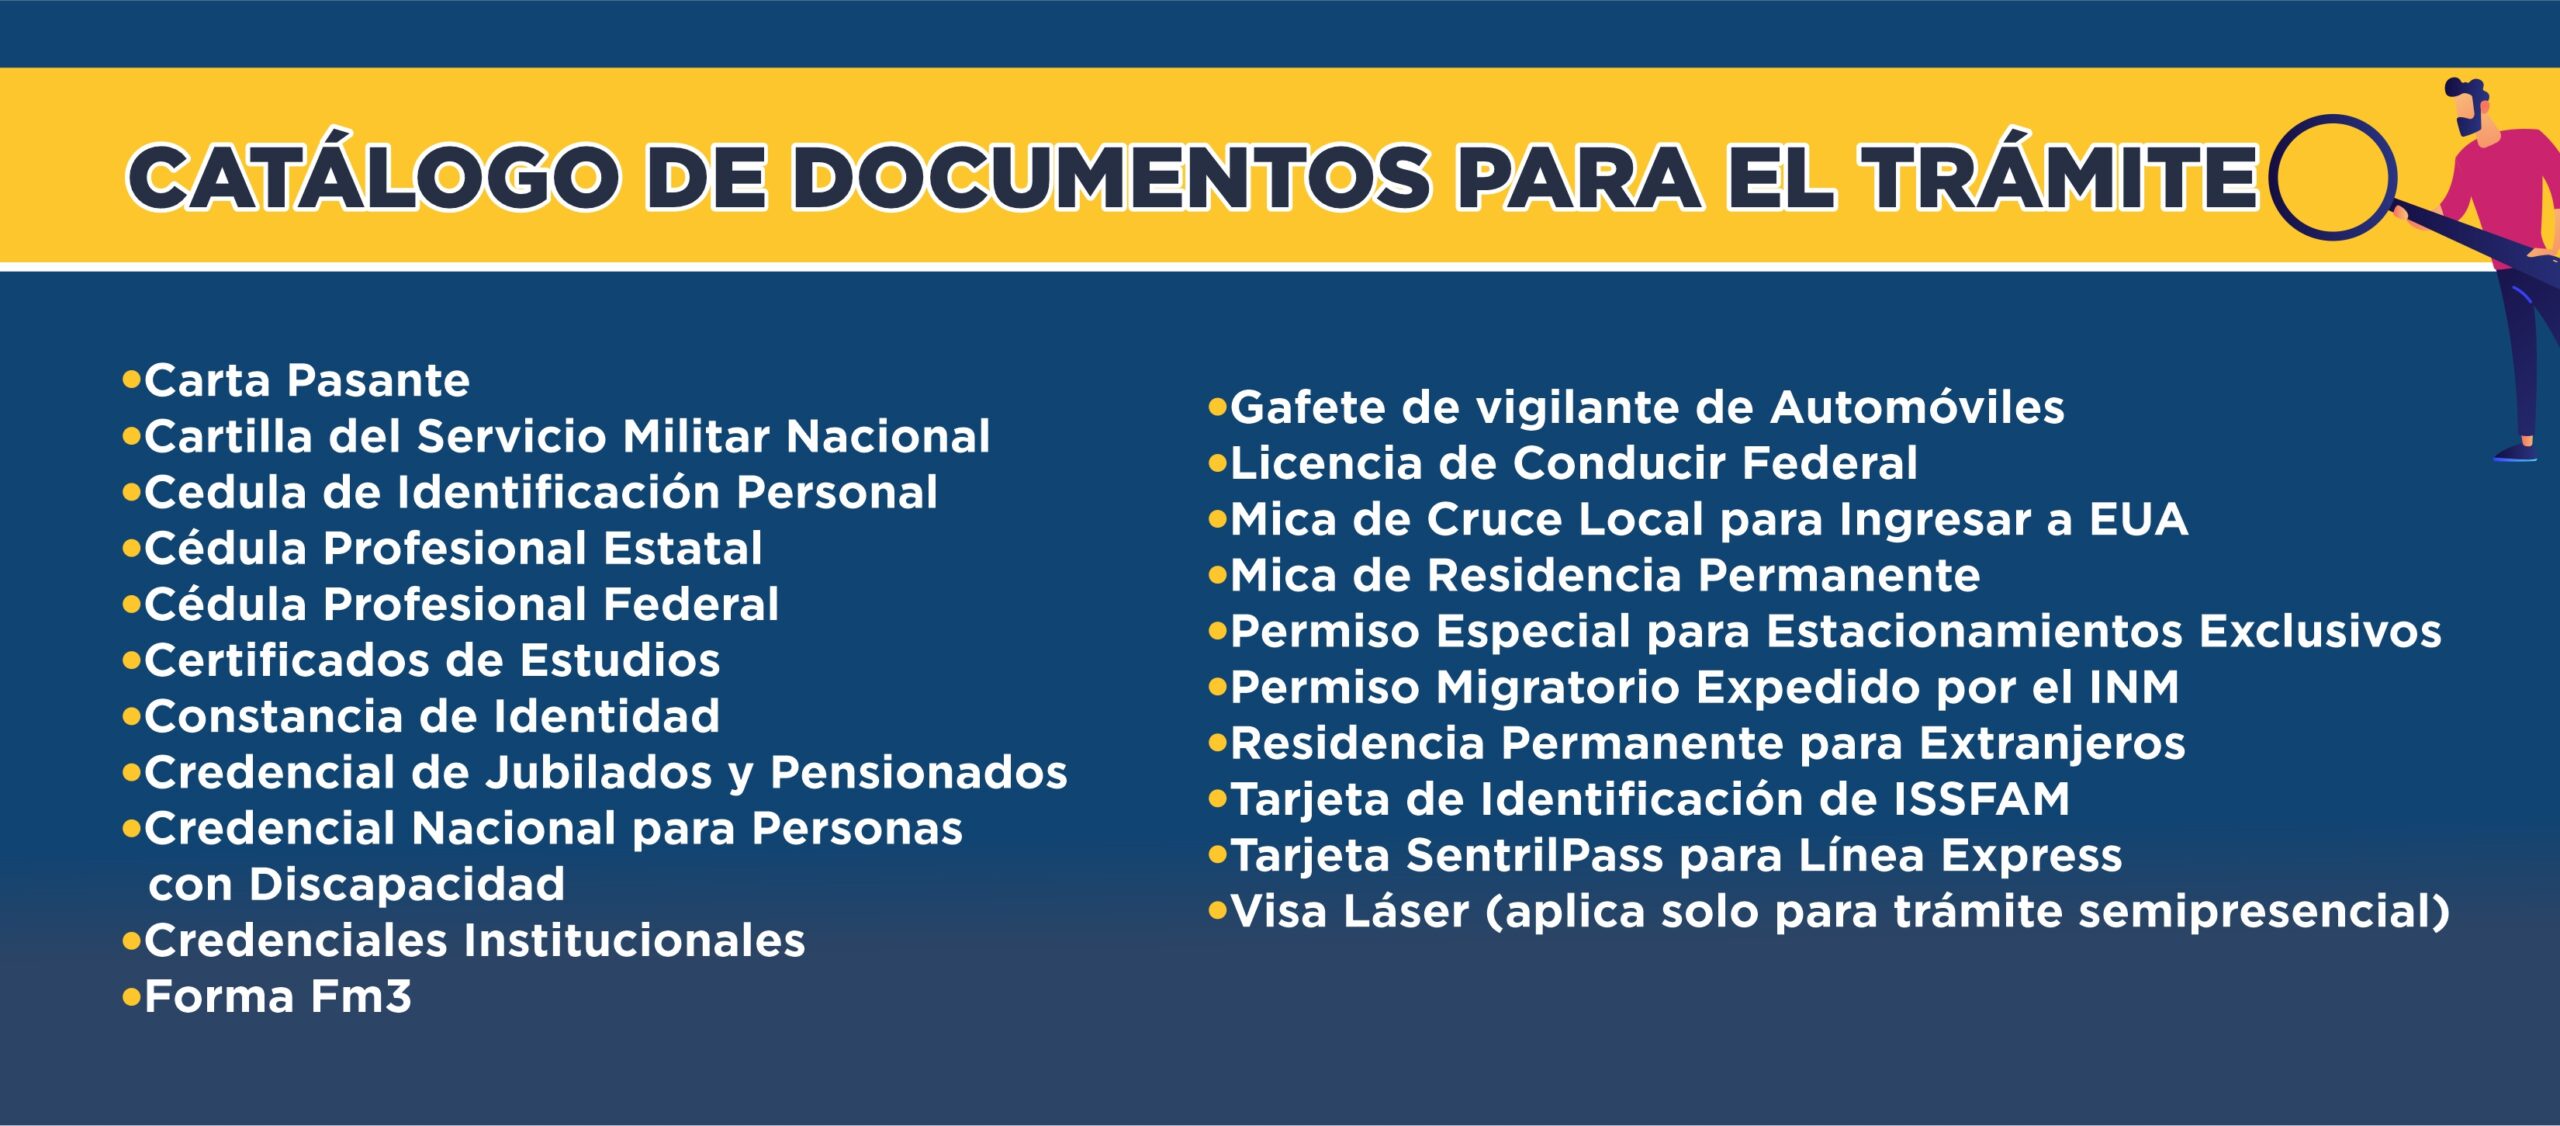 catalogo_documentos_